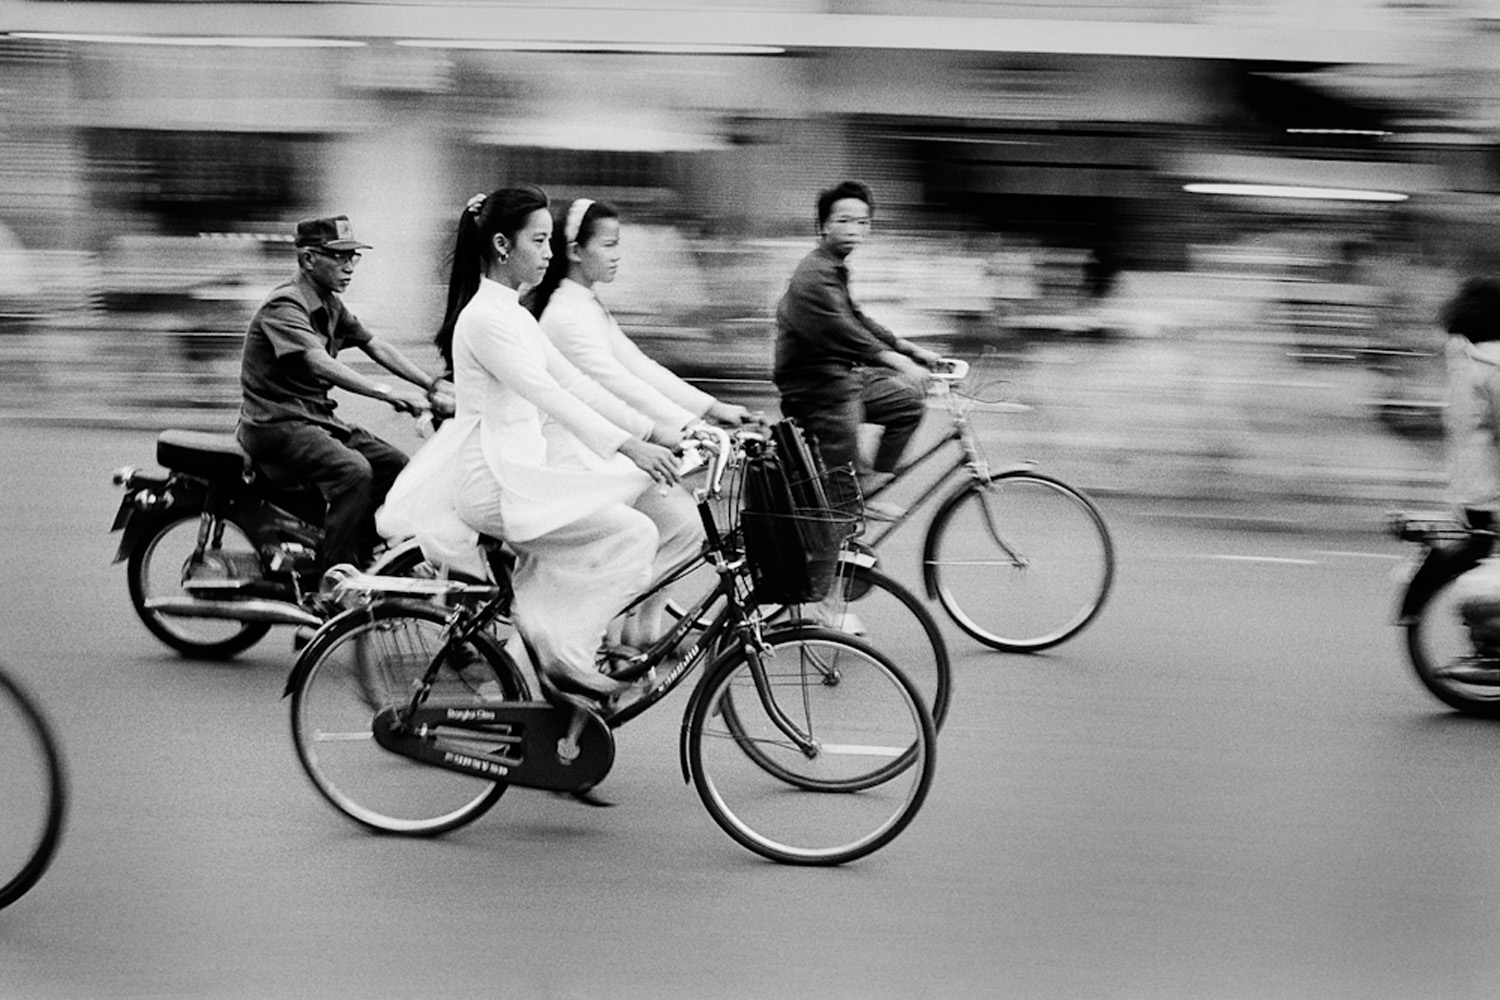 Saigon on Wheels